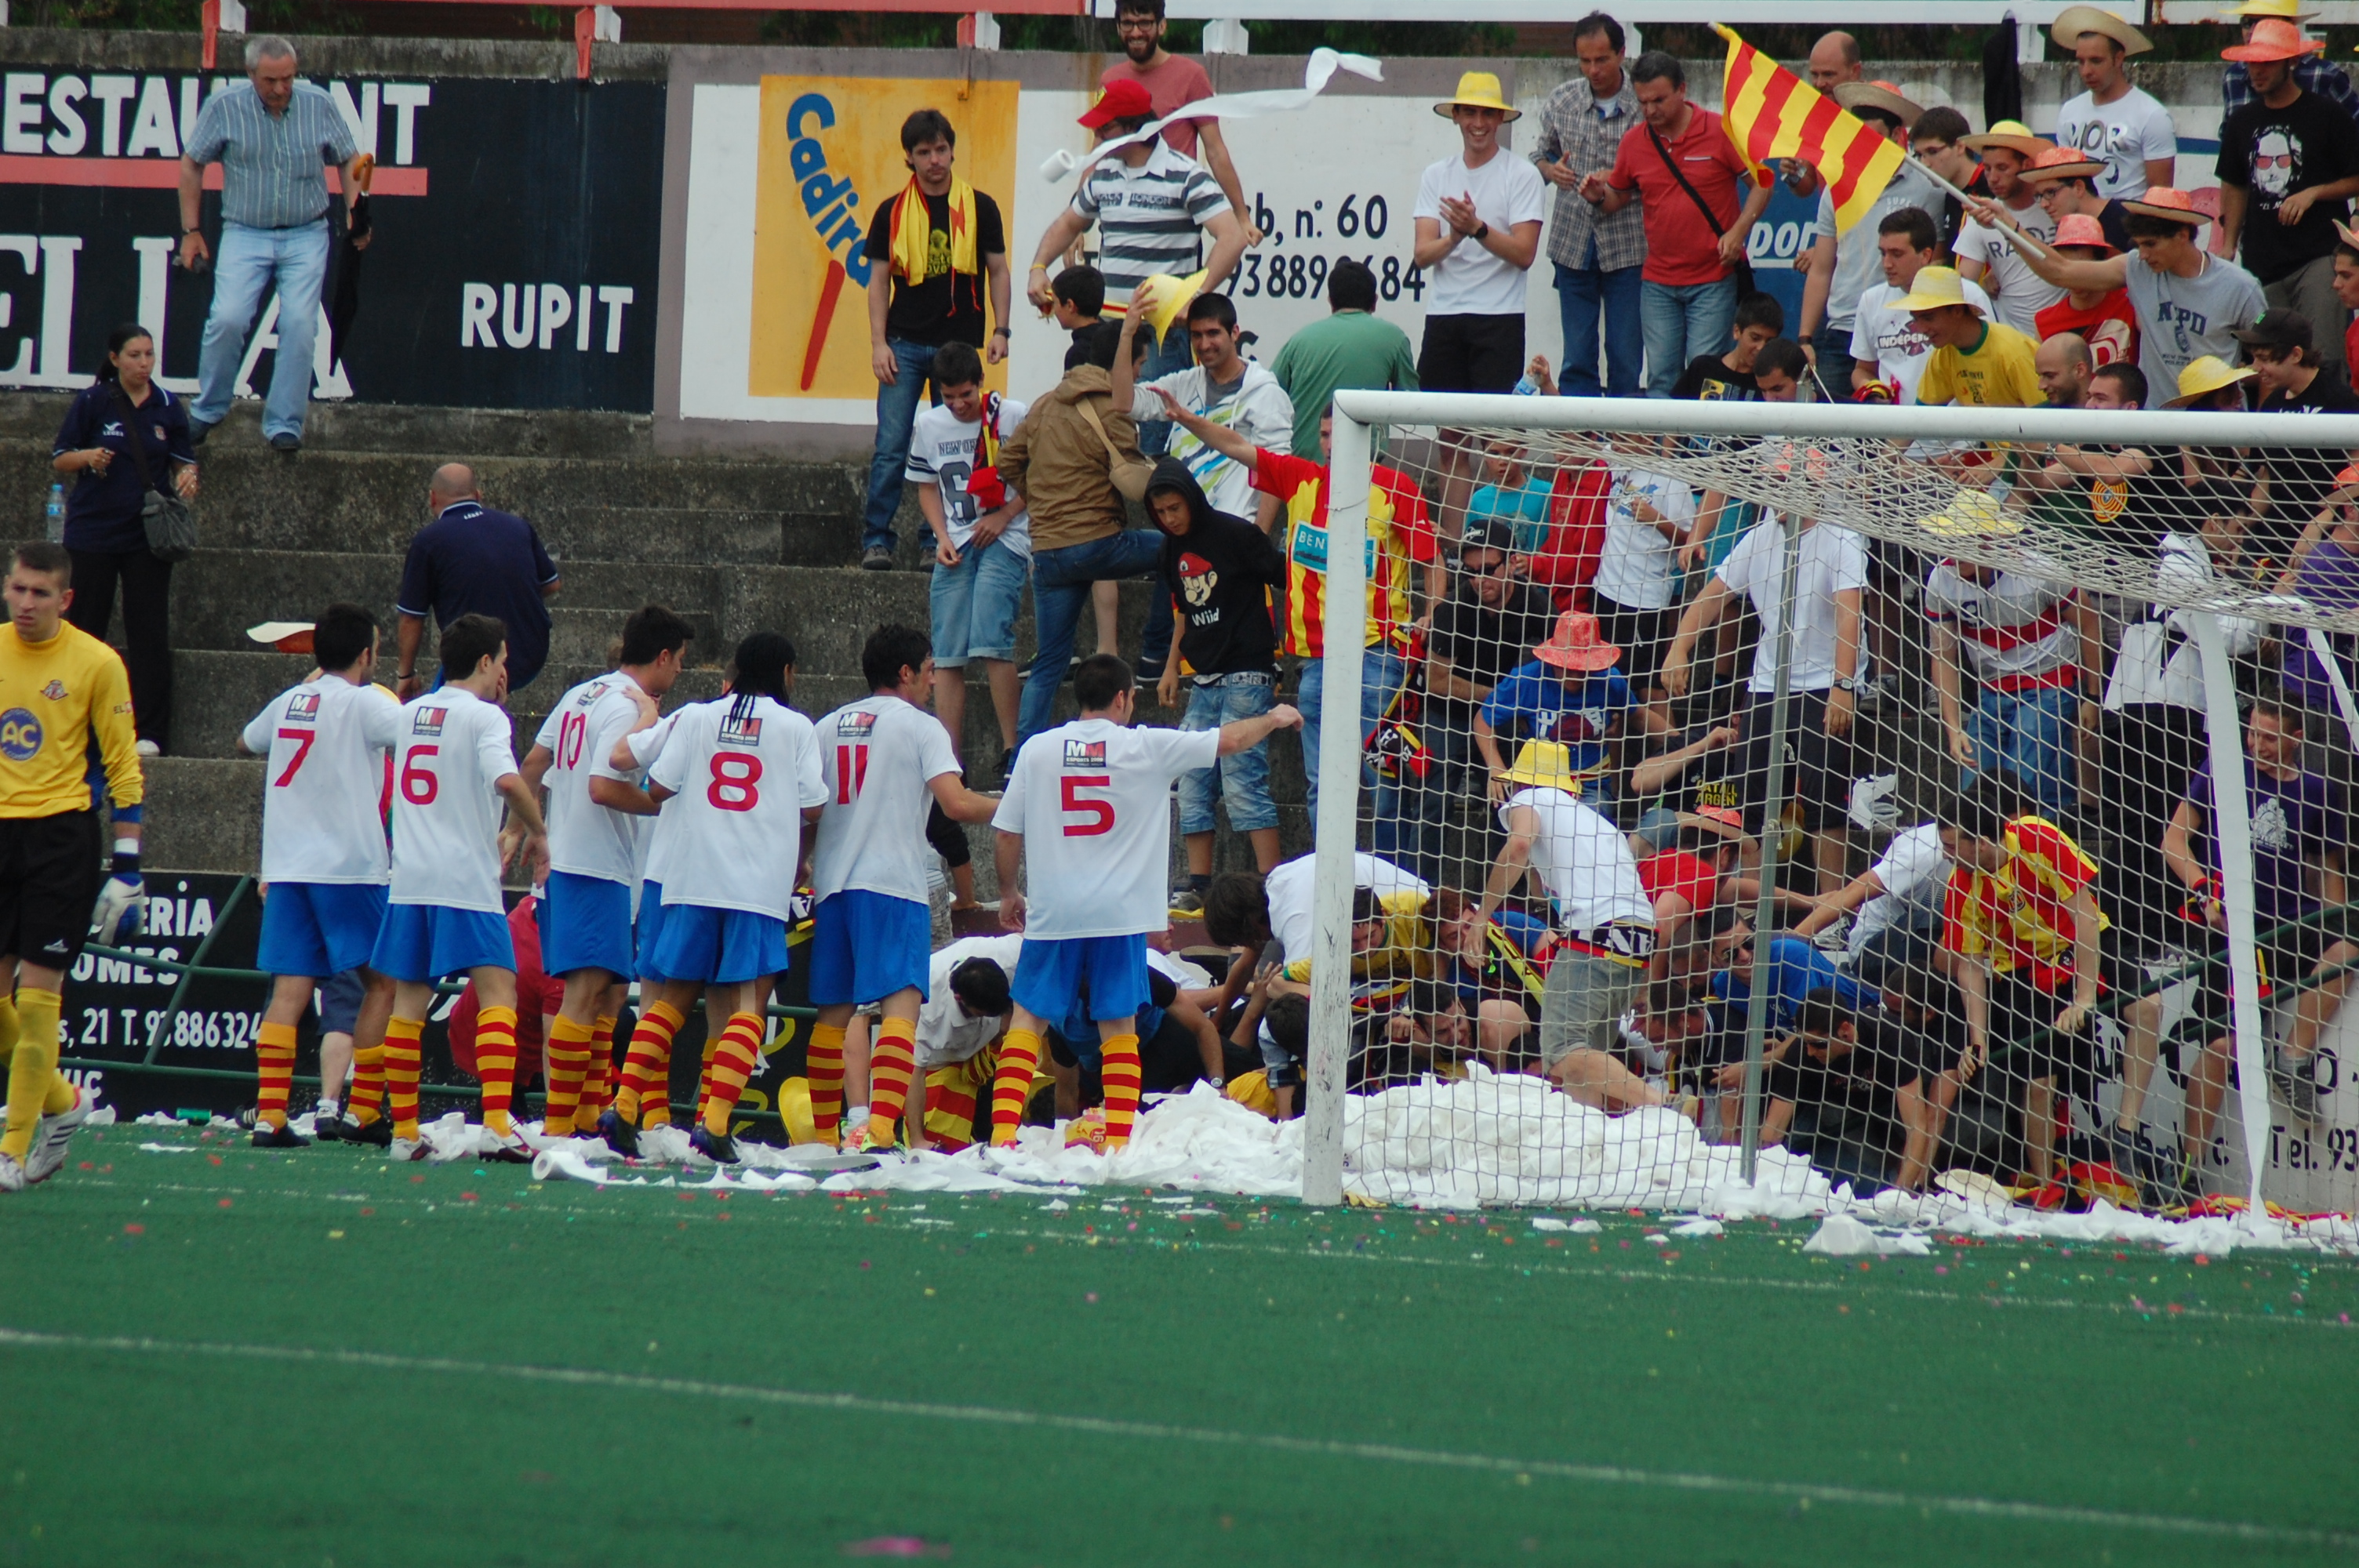 Moment en què l'afició del Manlleu cau obre la gespa amb els jugadors encara celebrant el gol. FOTO: Jordi de Planell.